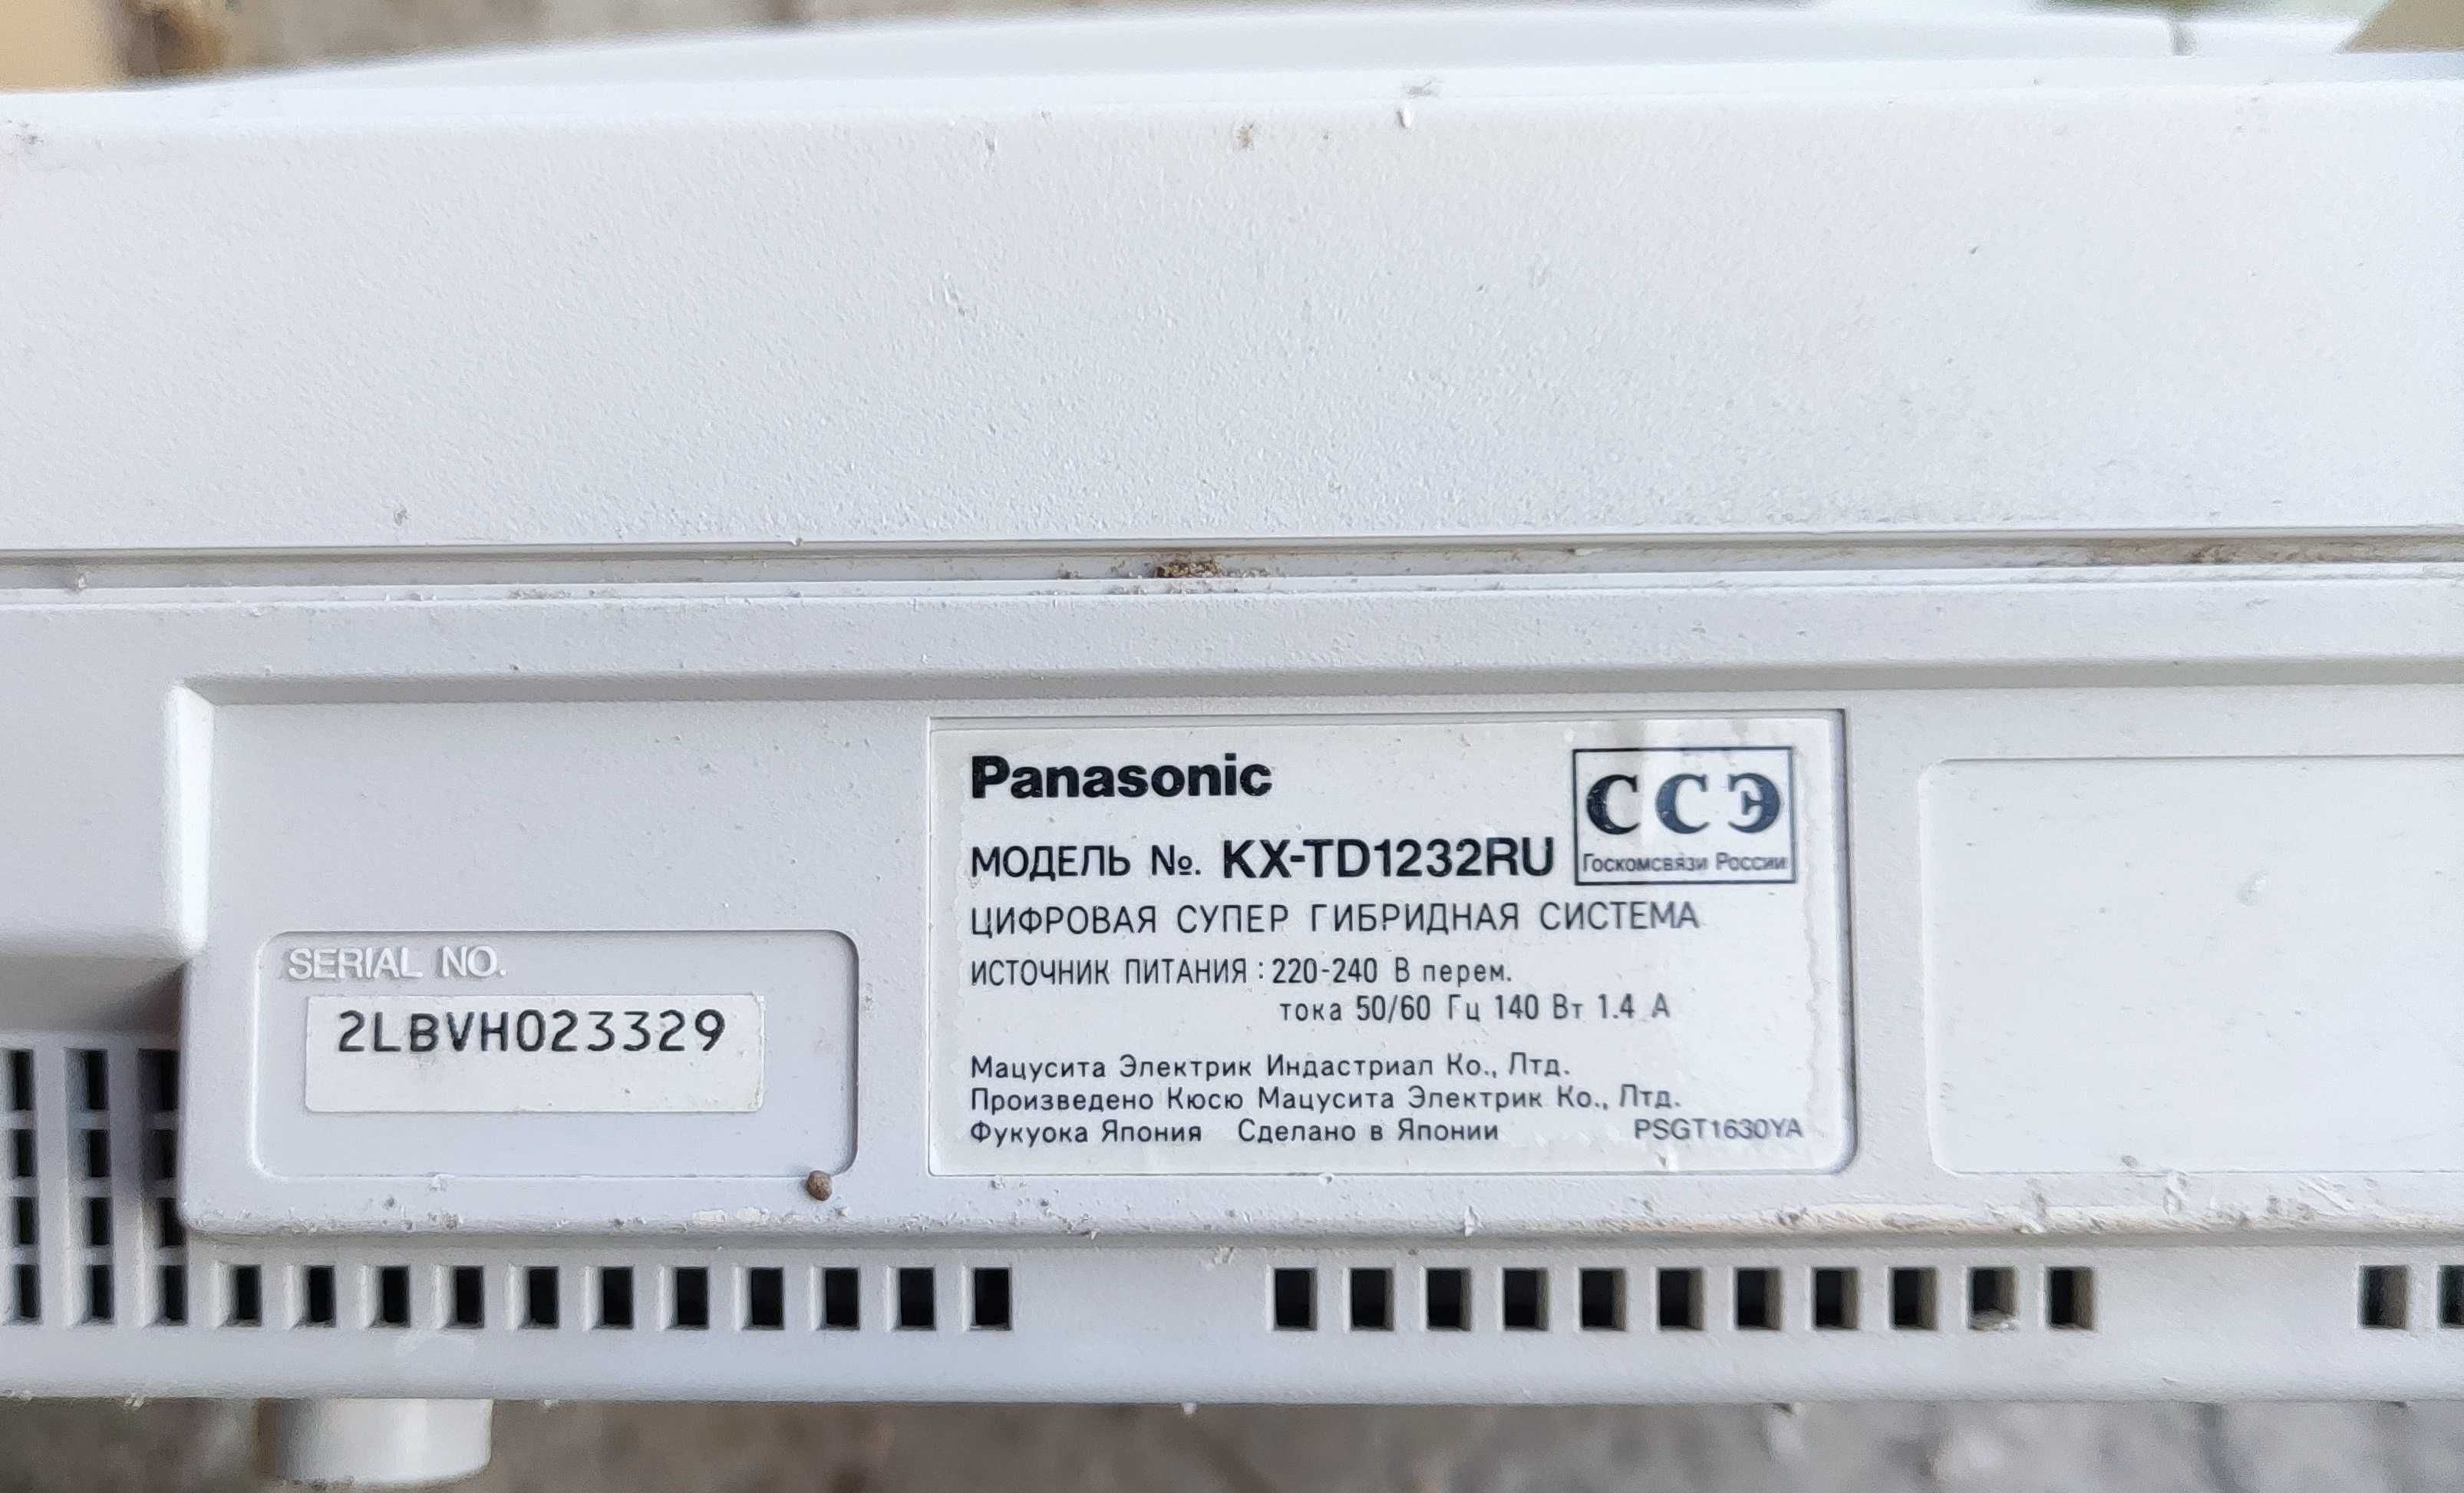 Мини АТС Panasonic KX-TD 1232 RU